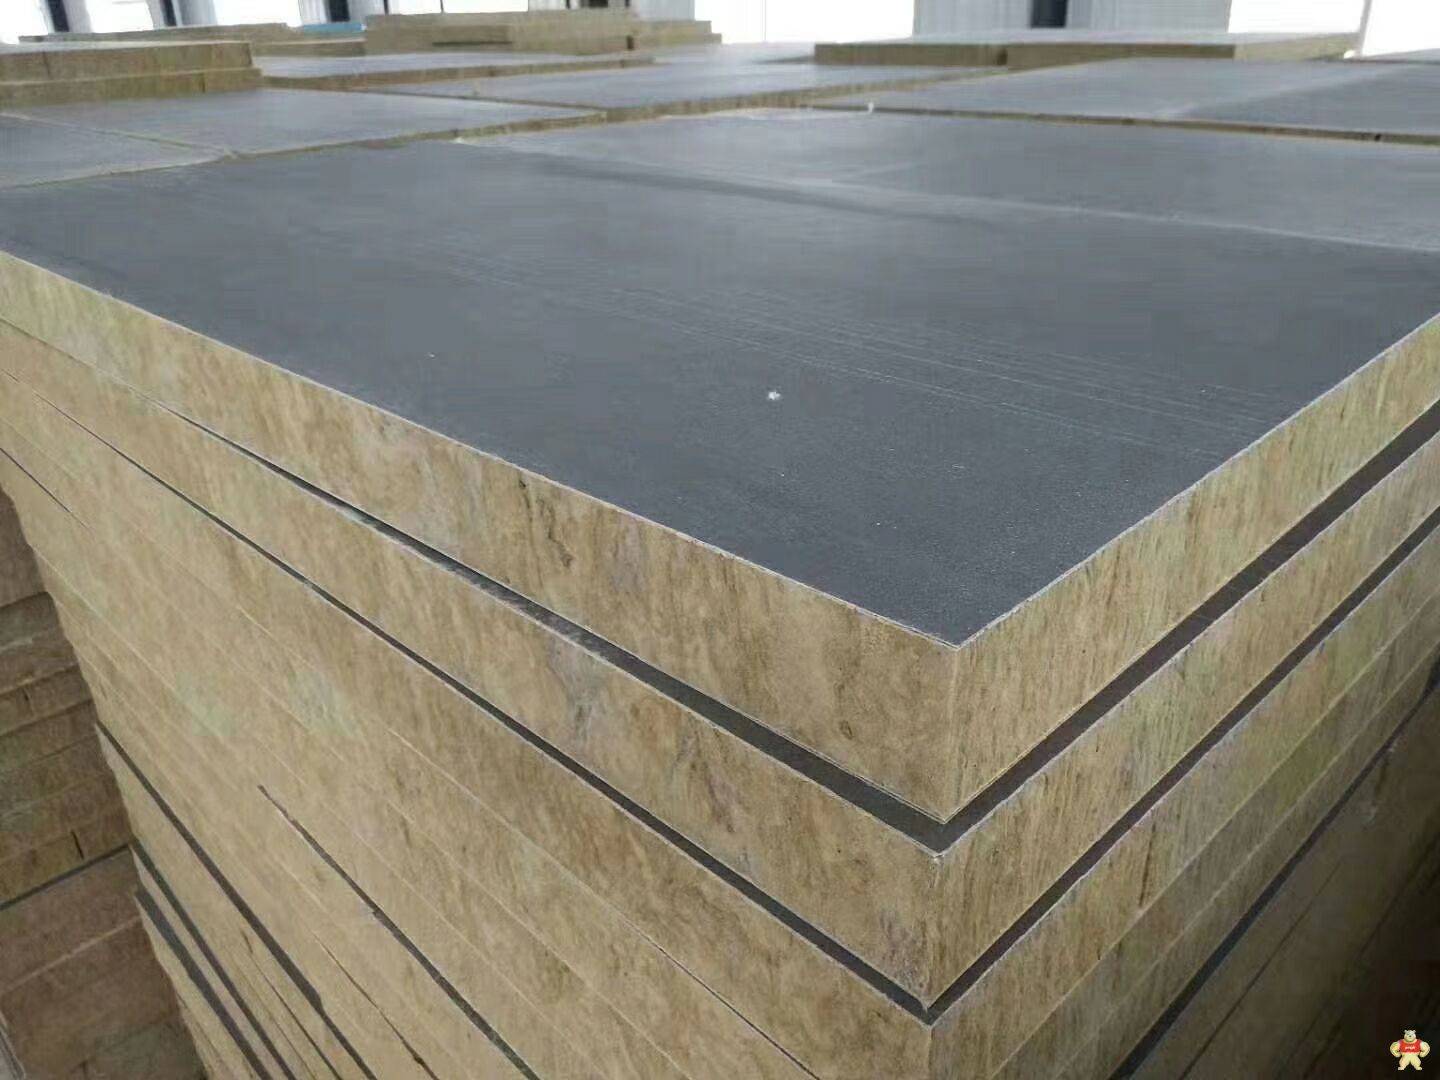 改性聚氨酯岩棉复合板专业生产厂家 改性聚氨酯岩棉板,改性岩棉复合板,聚氨酯岩棉复合板,岩棉板,柔性毡复合岩棉板